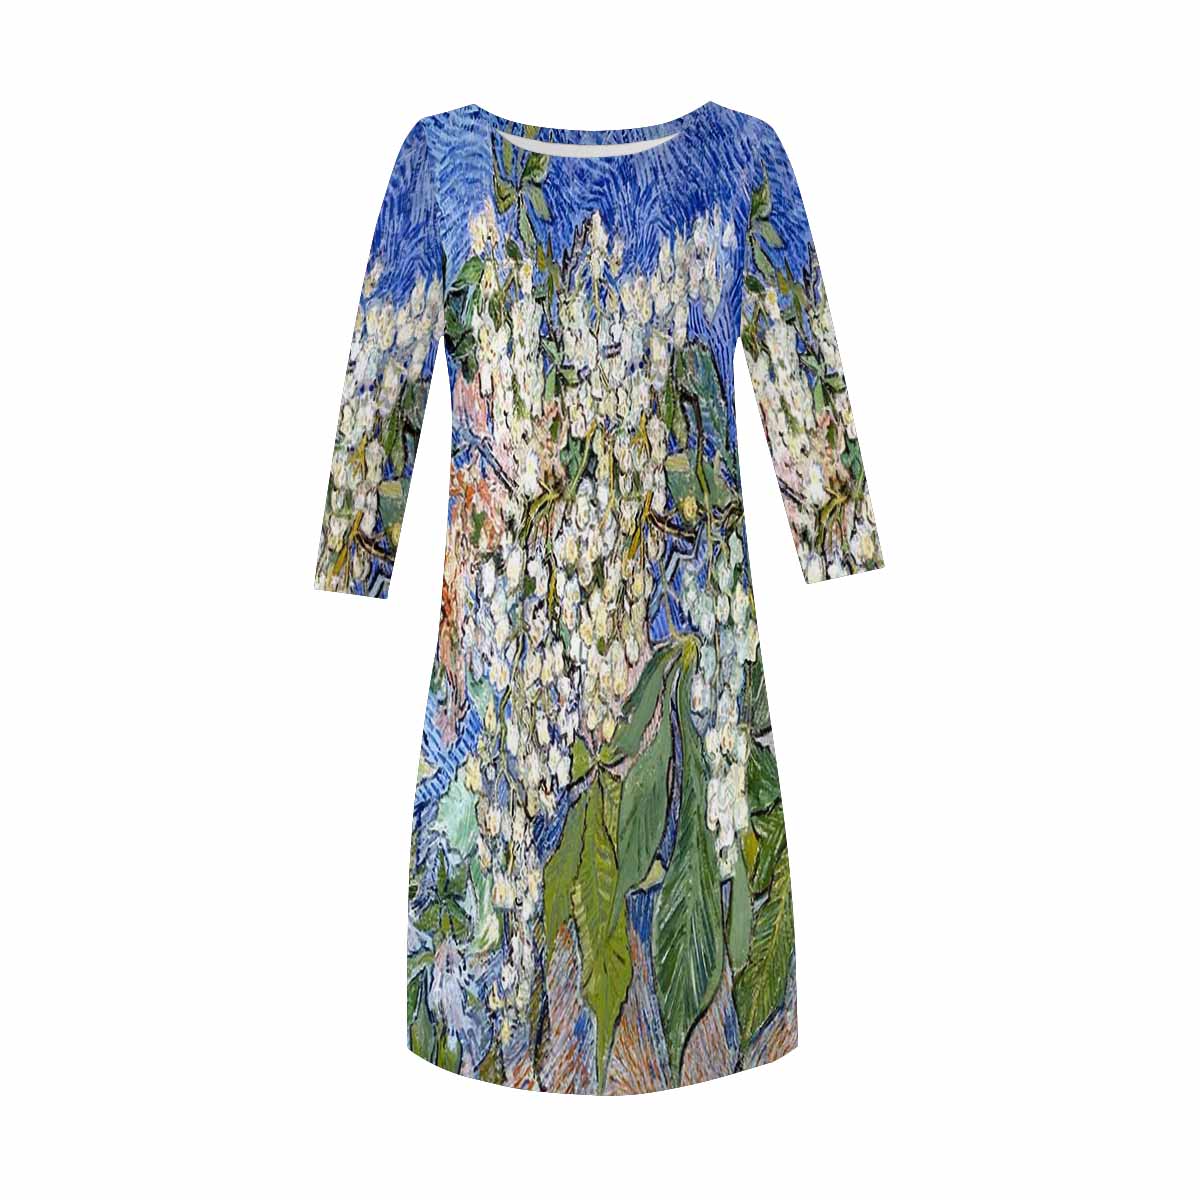 Vintage floral loose dress, XS to 3X plus size, model D29532 Design 04